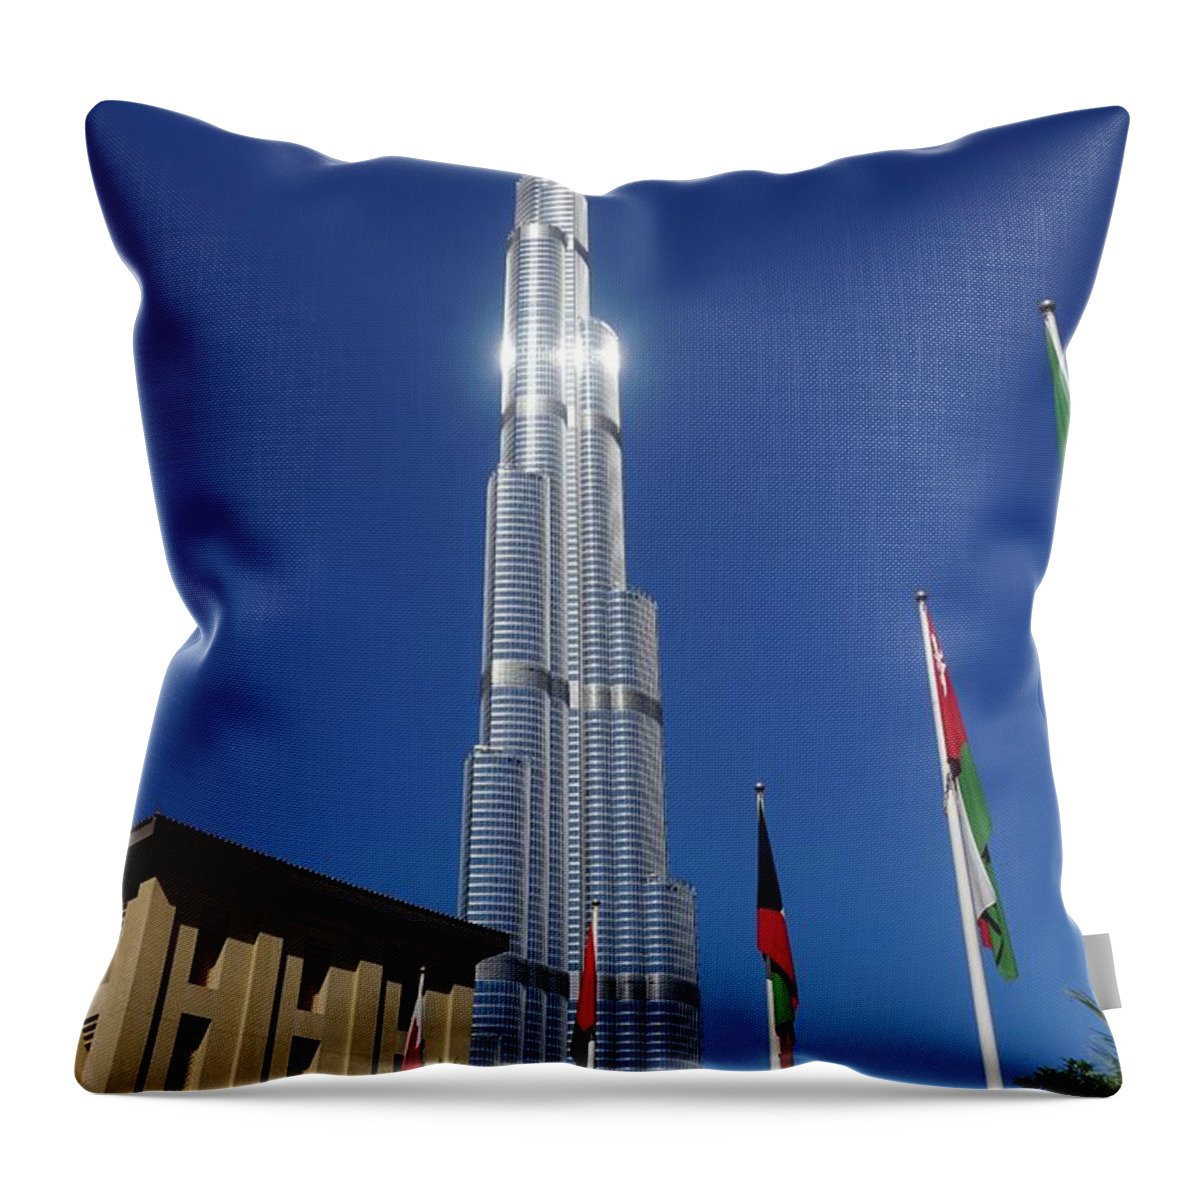 Burj Khalifa Throw Pillow featuring the photograph The Burj Khalifa by Jimmy Clark